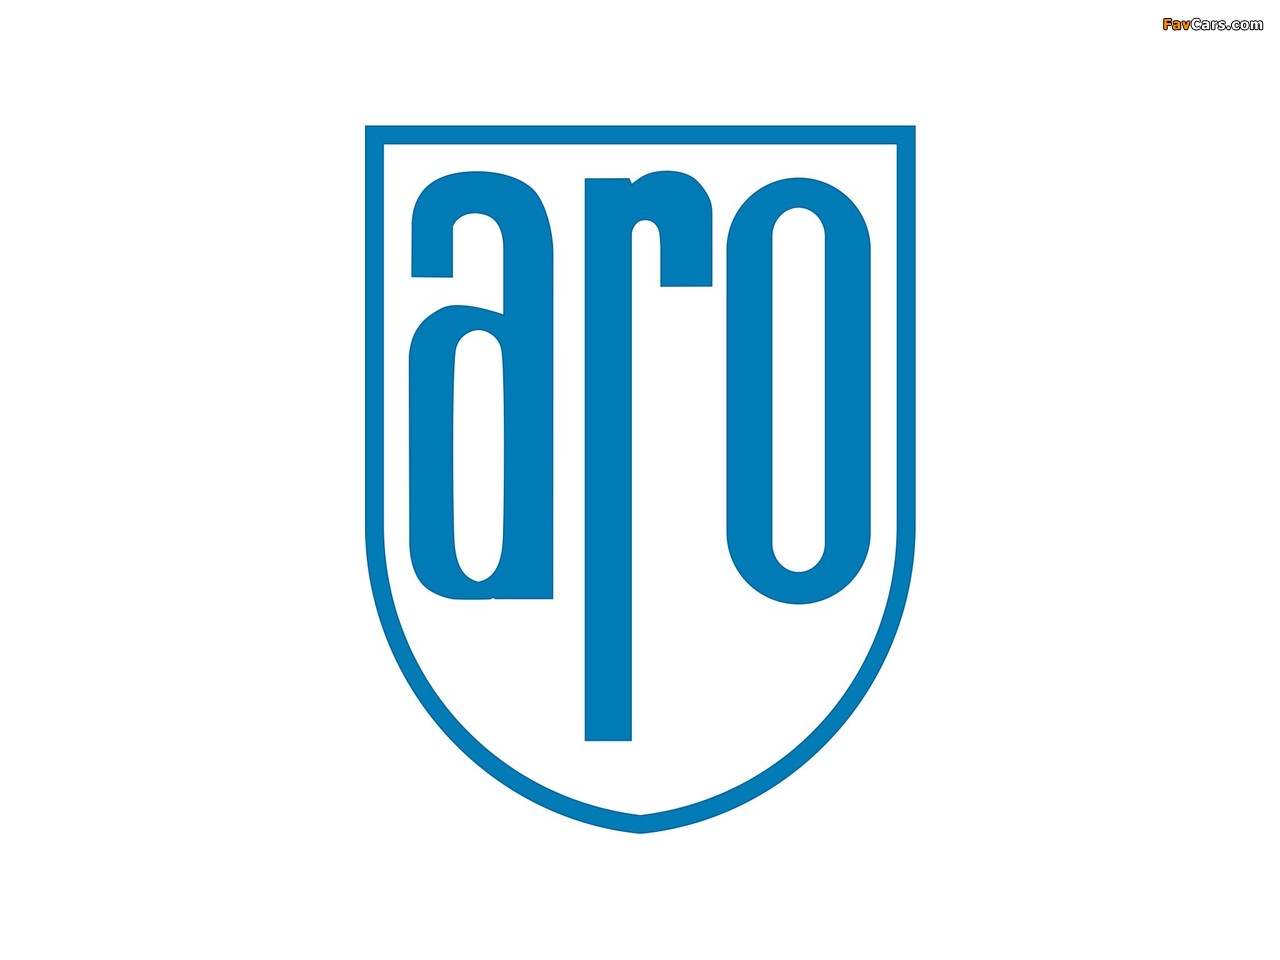 ARO photos (1280 x 960)